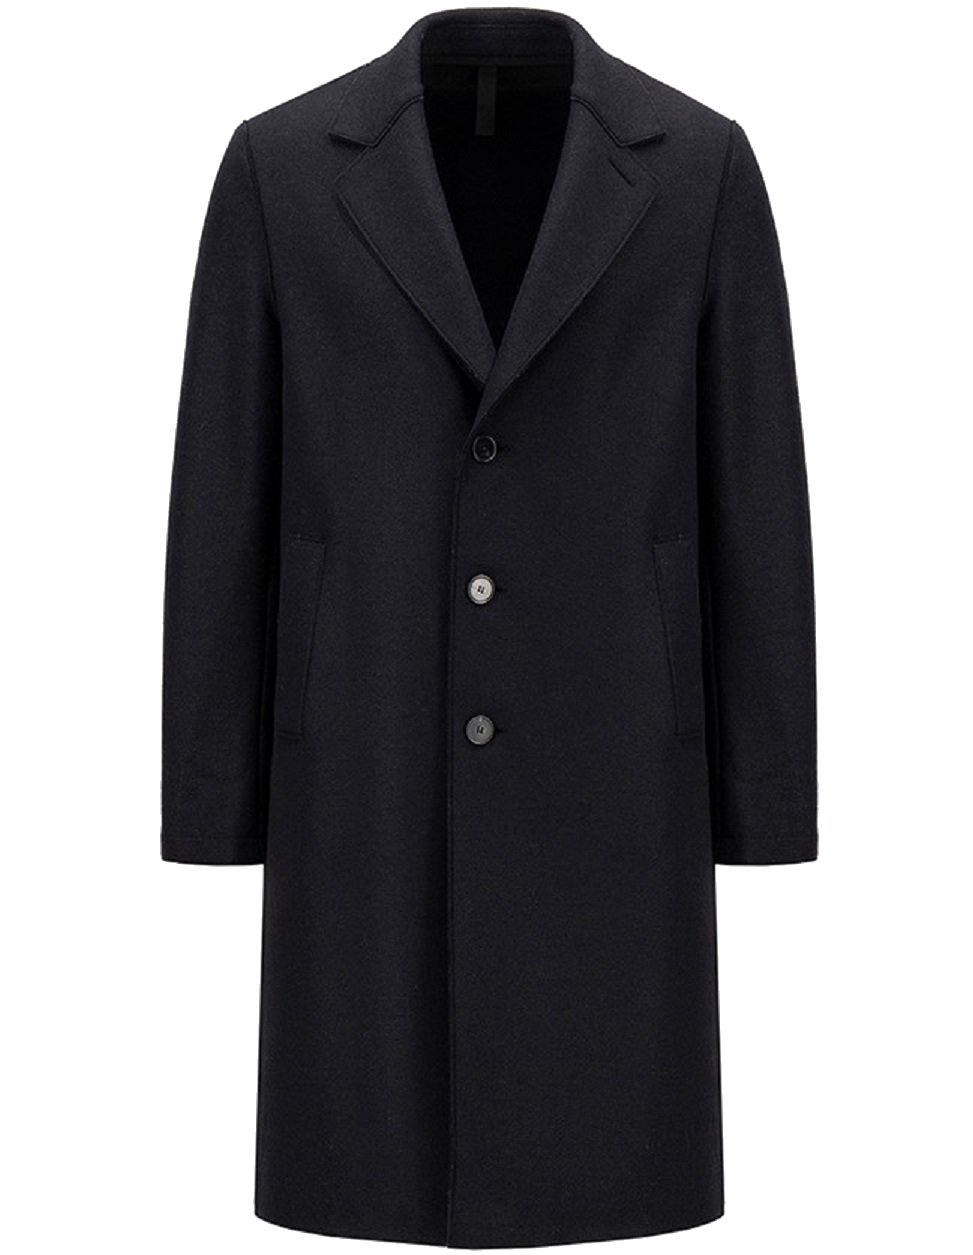 HARRIS WHARF Pressed Wool Overcoat in Black